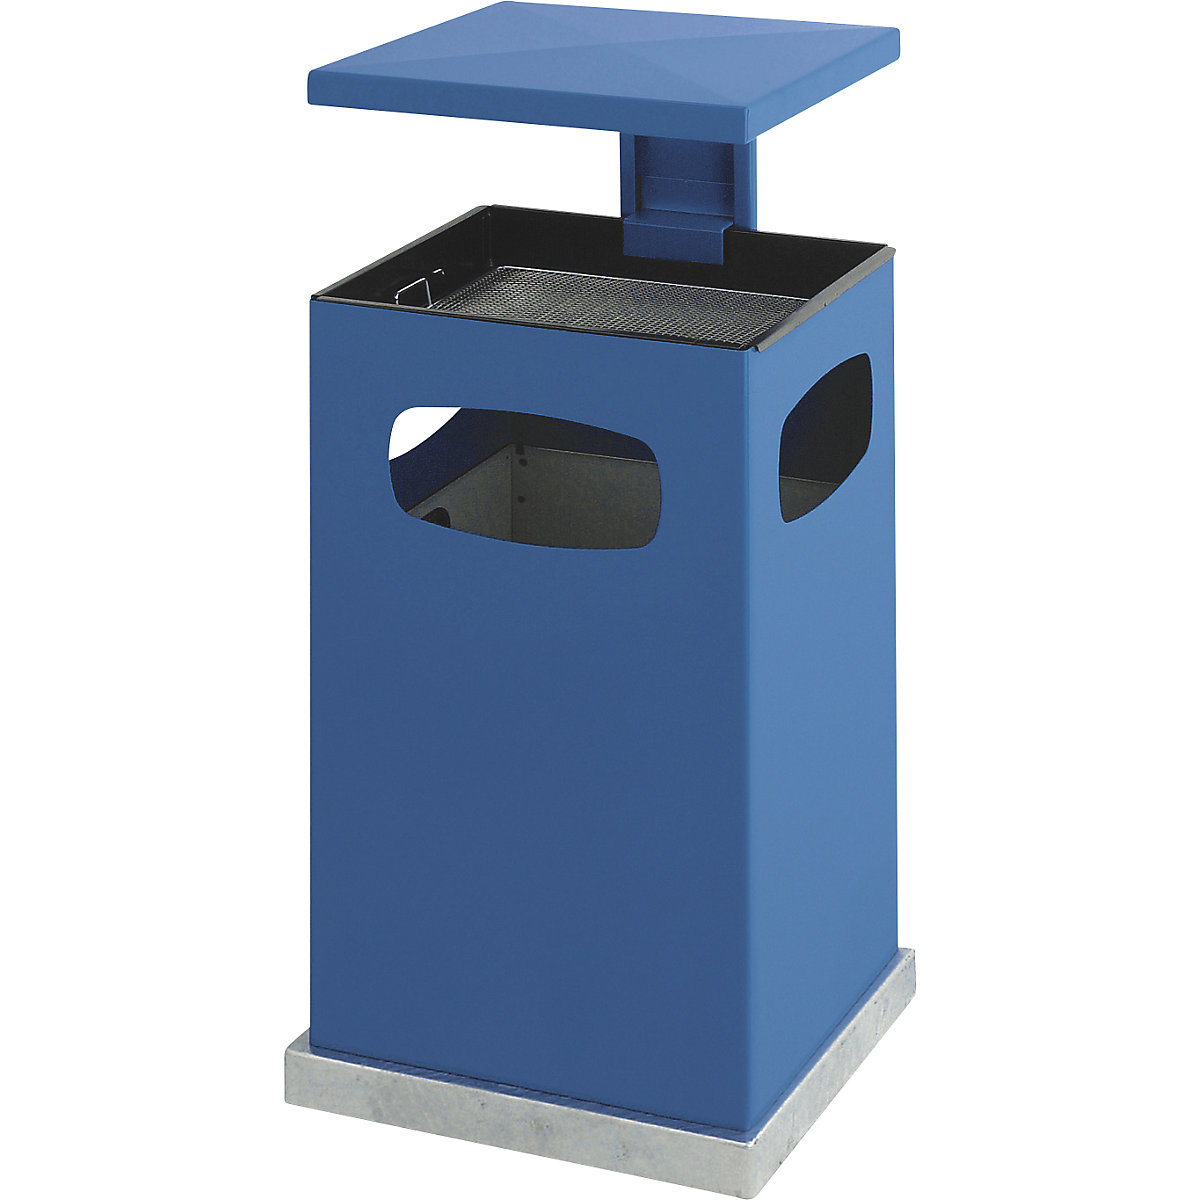 Collecteur de déchets avec cendrier et toit de protection, capacité 72 l, l x h x p 500 x 955 x 500 mm, bleu gentiane